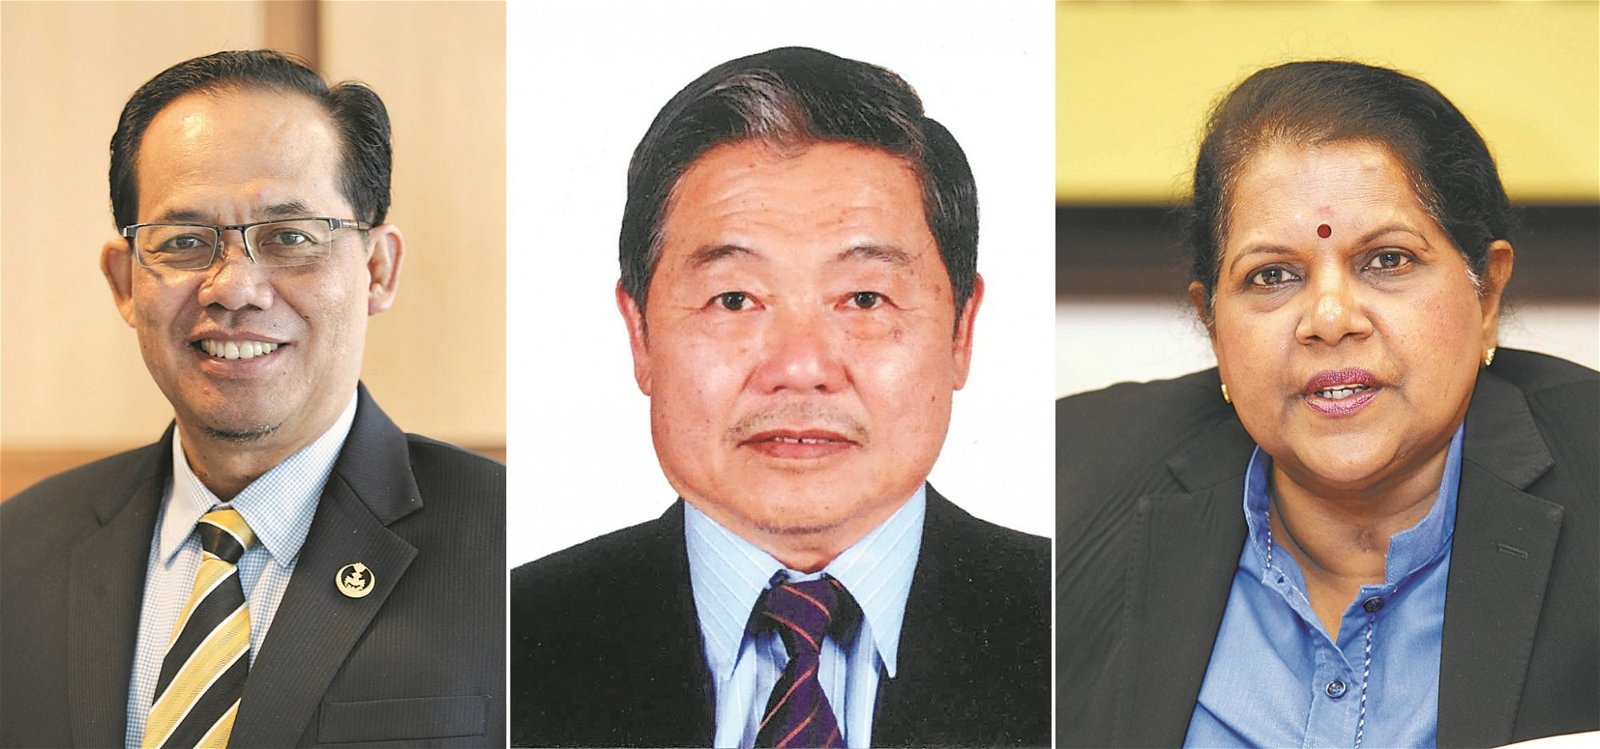 霹州行政议员拿督三苏丁（左）受封DPCM拿督勋衔；马华宜力区会主席温达雄（中）受封DPMP拿督勋衔；霹雳州议长丹嘉华丽（右）受封DPMP拿督勋衔。